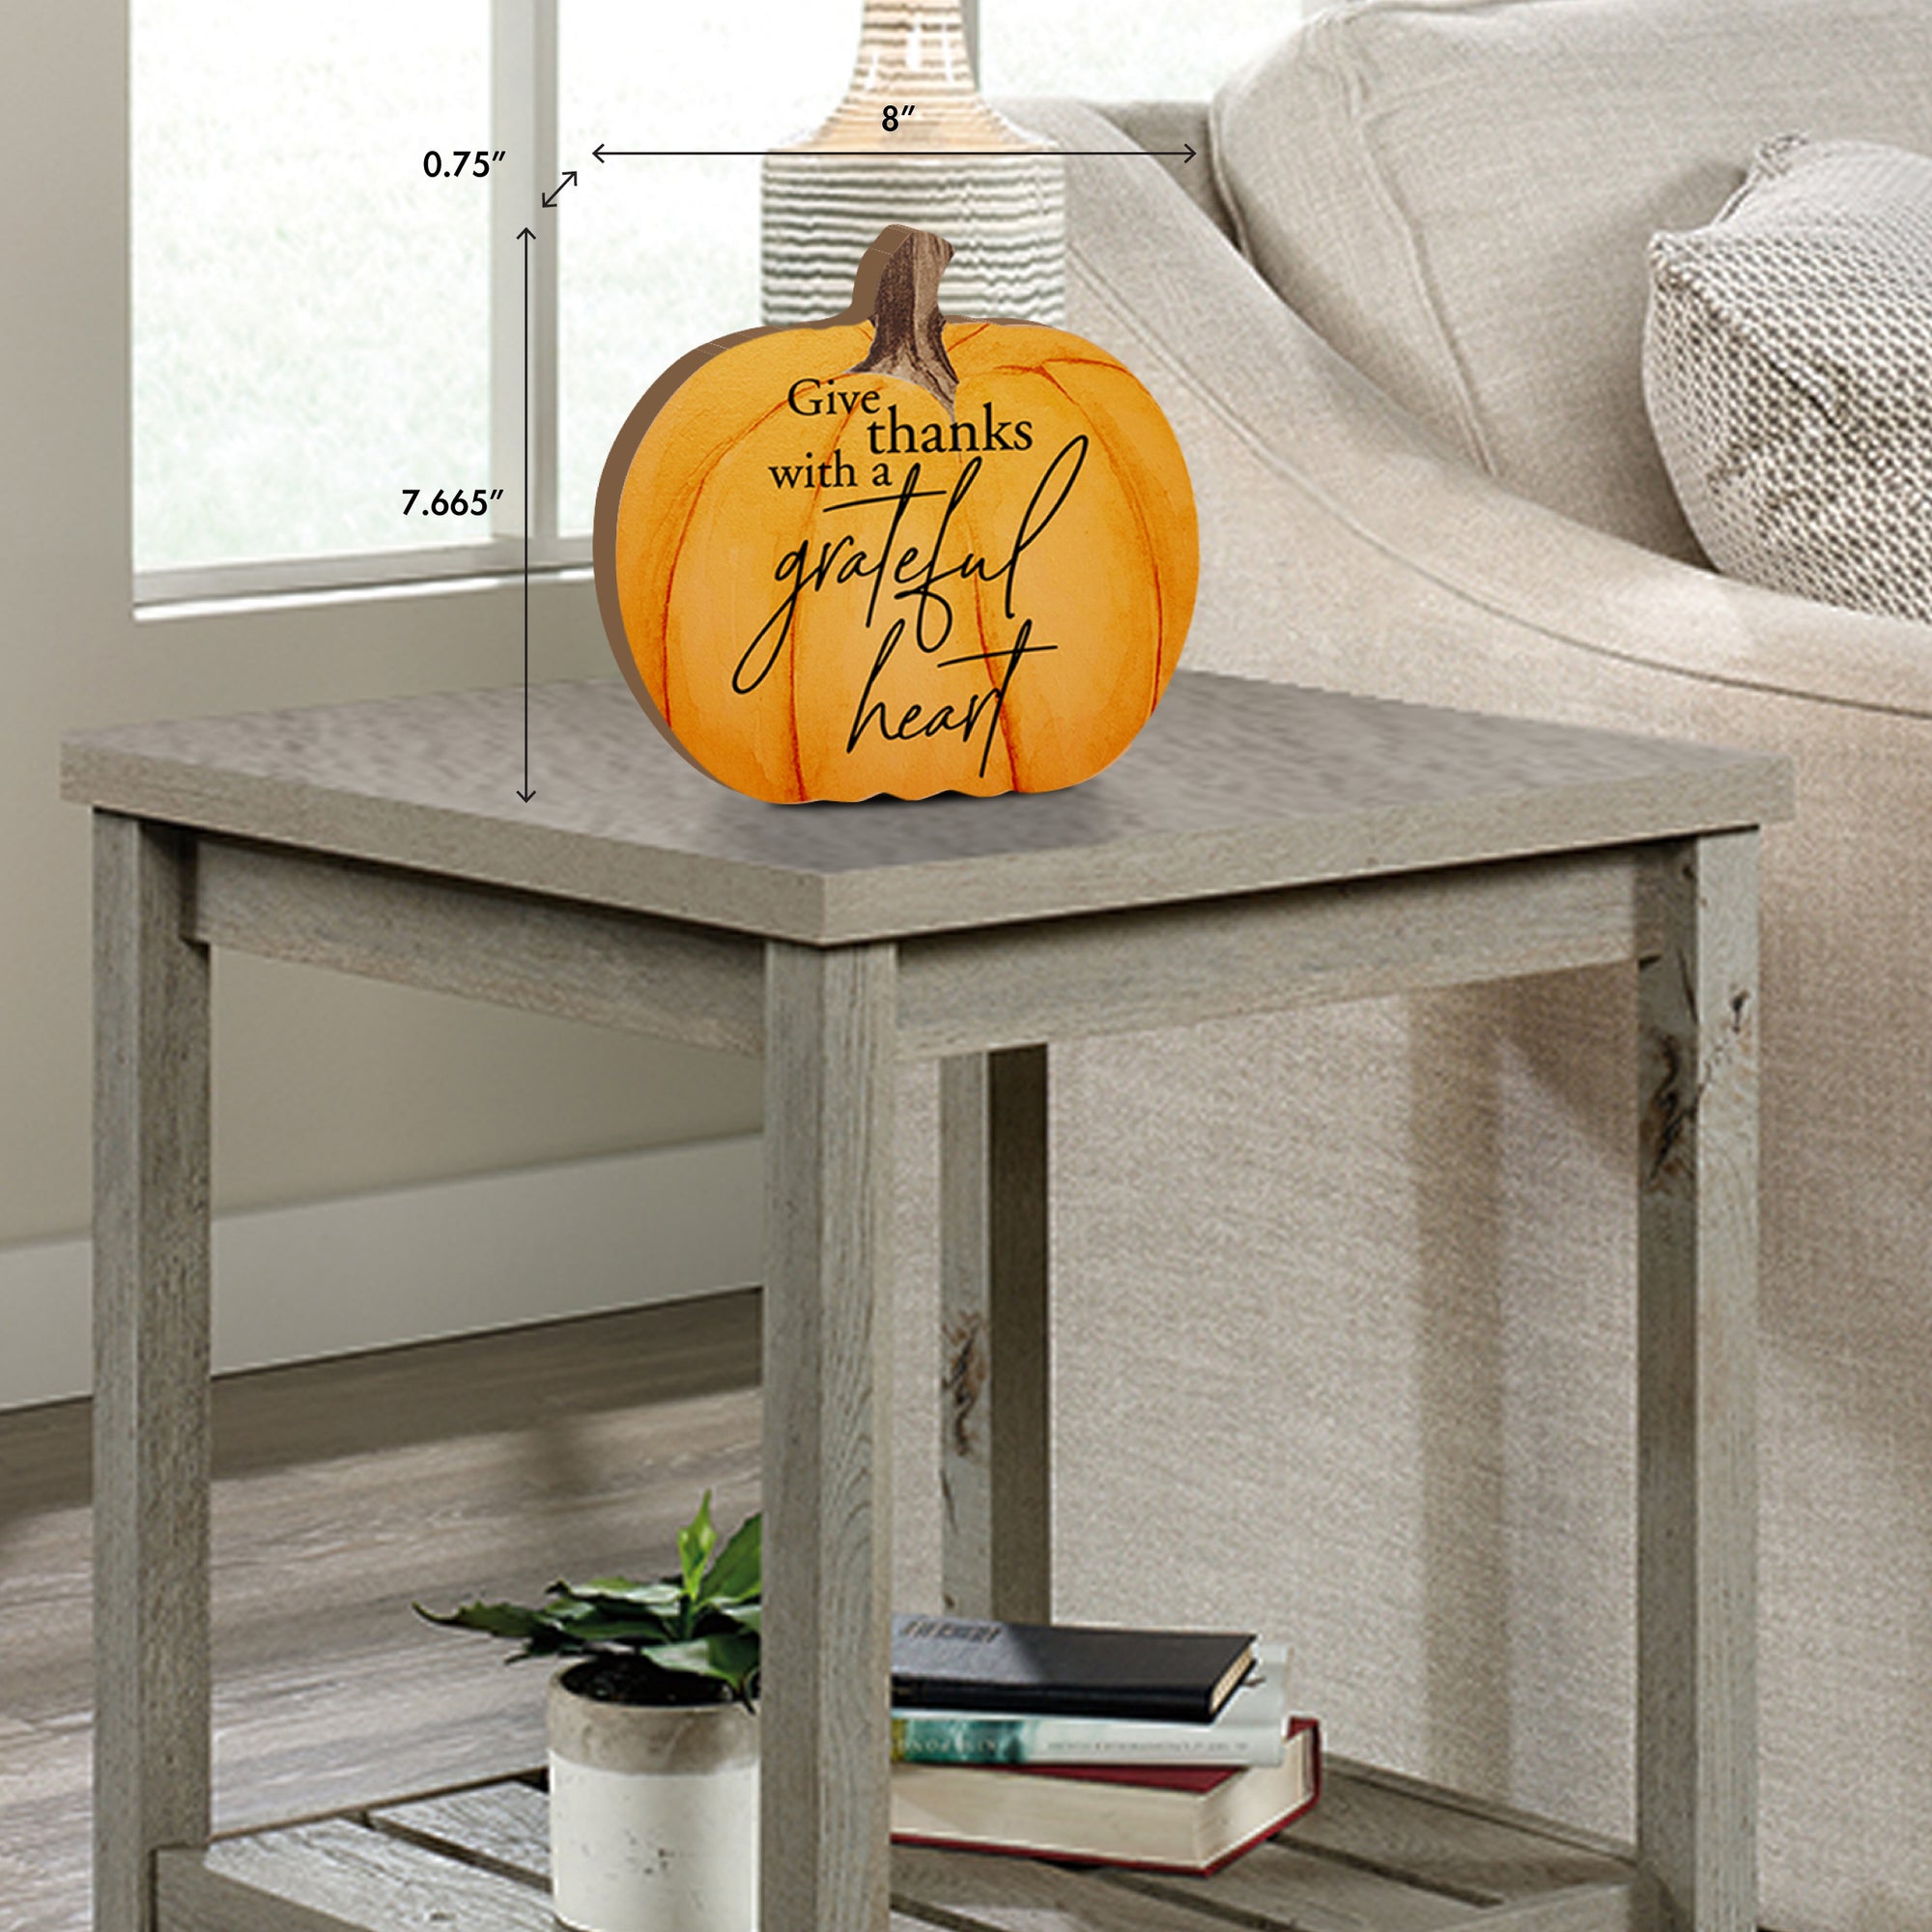 Pumpkin shelf decor Decorative Home Décor - Grateful Heart